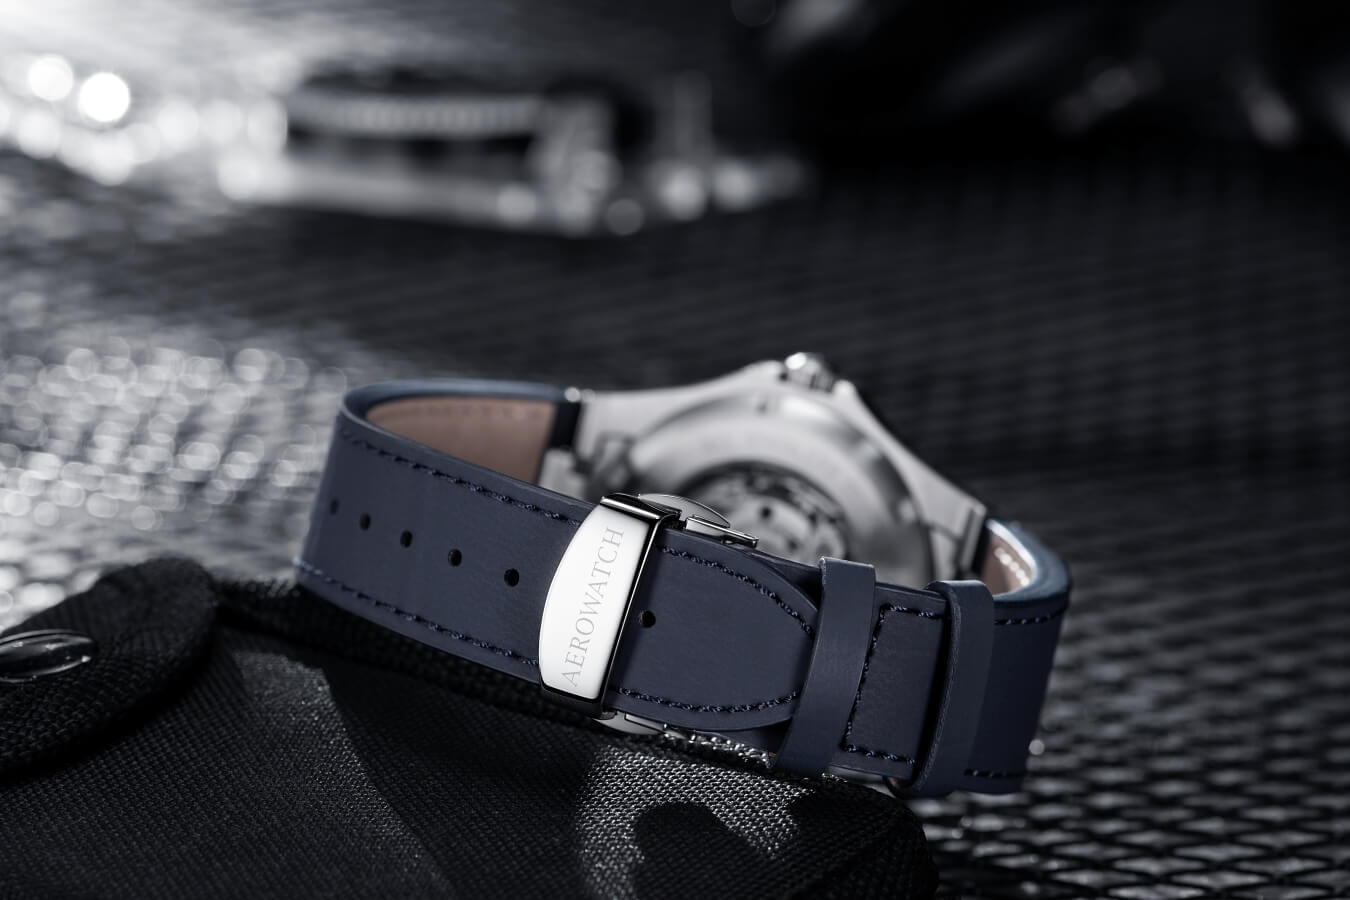 Pierwszy zegarek Aerowatch ze zintegrowaną bransoletą. Aerowatch Milan Collection